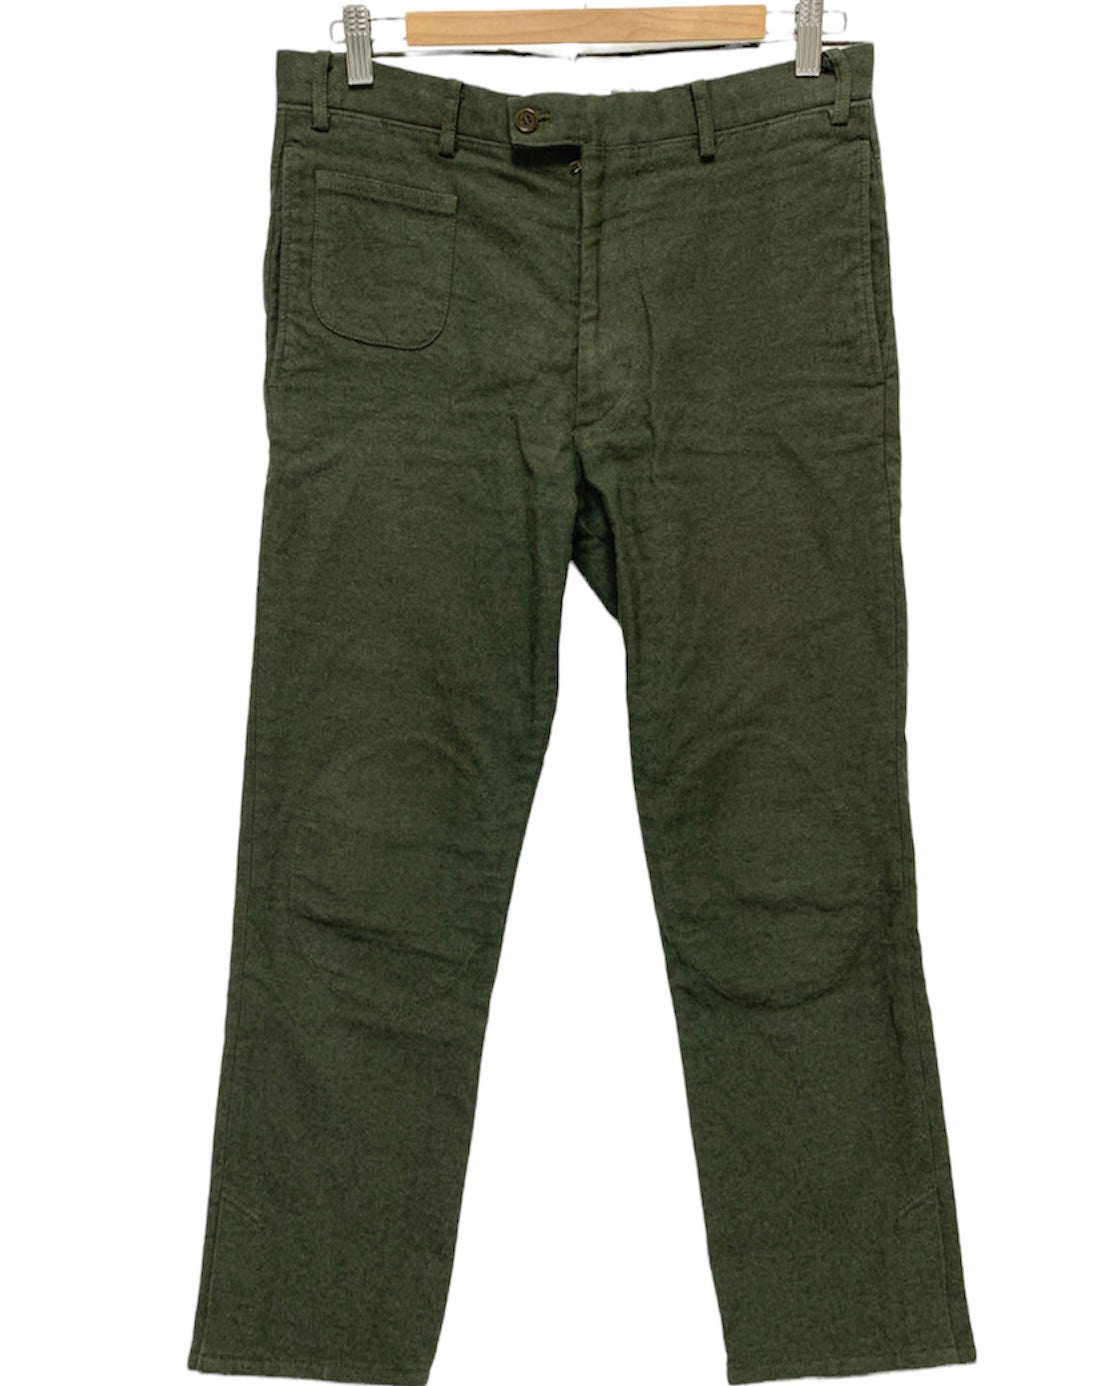 visvim McQueen civilian pants Olive 1 - ワークパンツ/カーゴパンツ